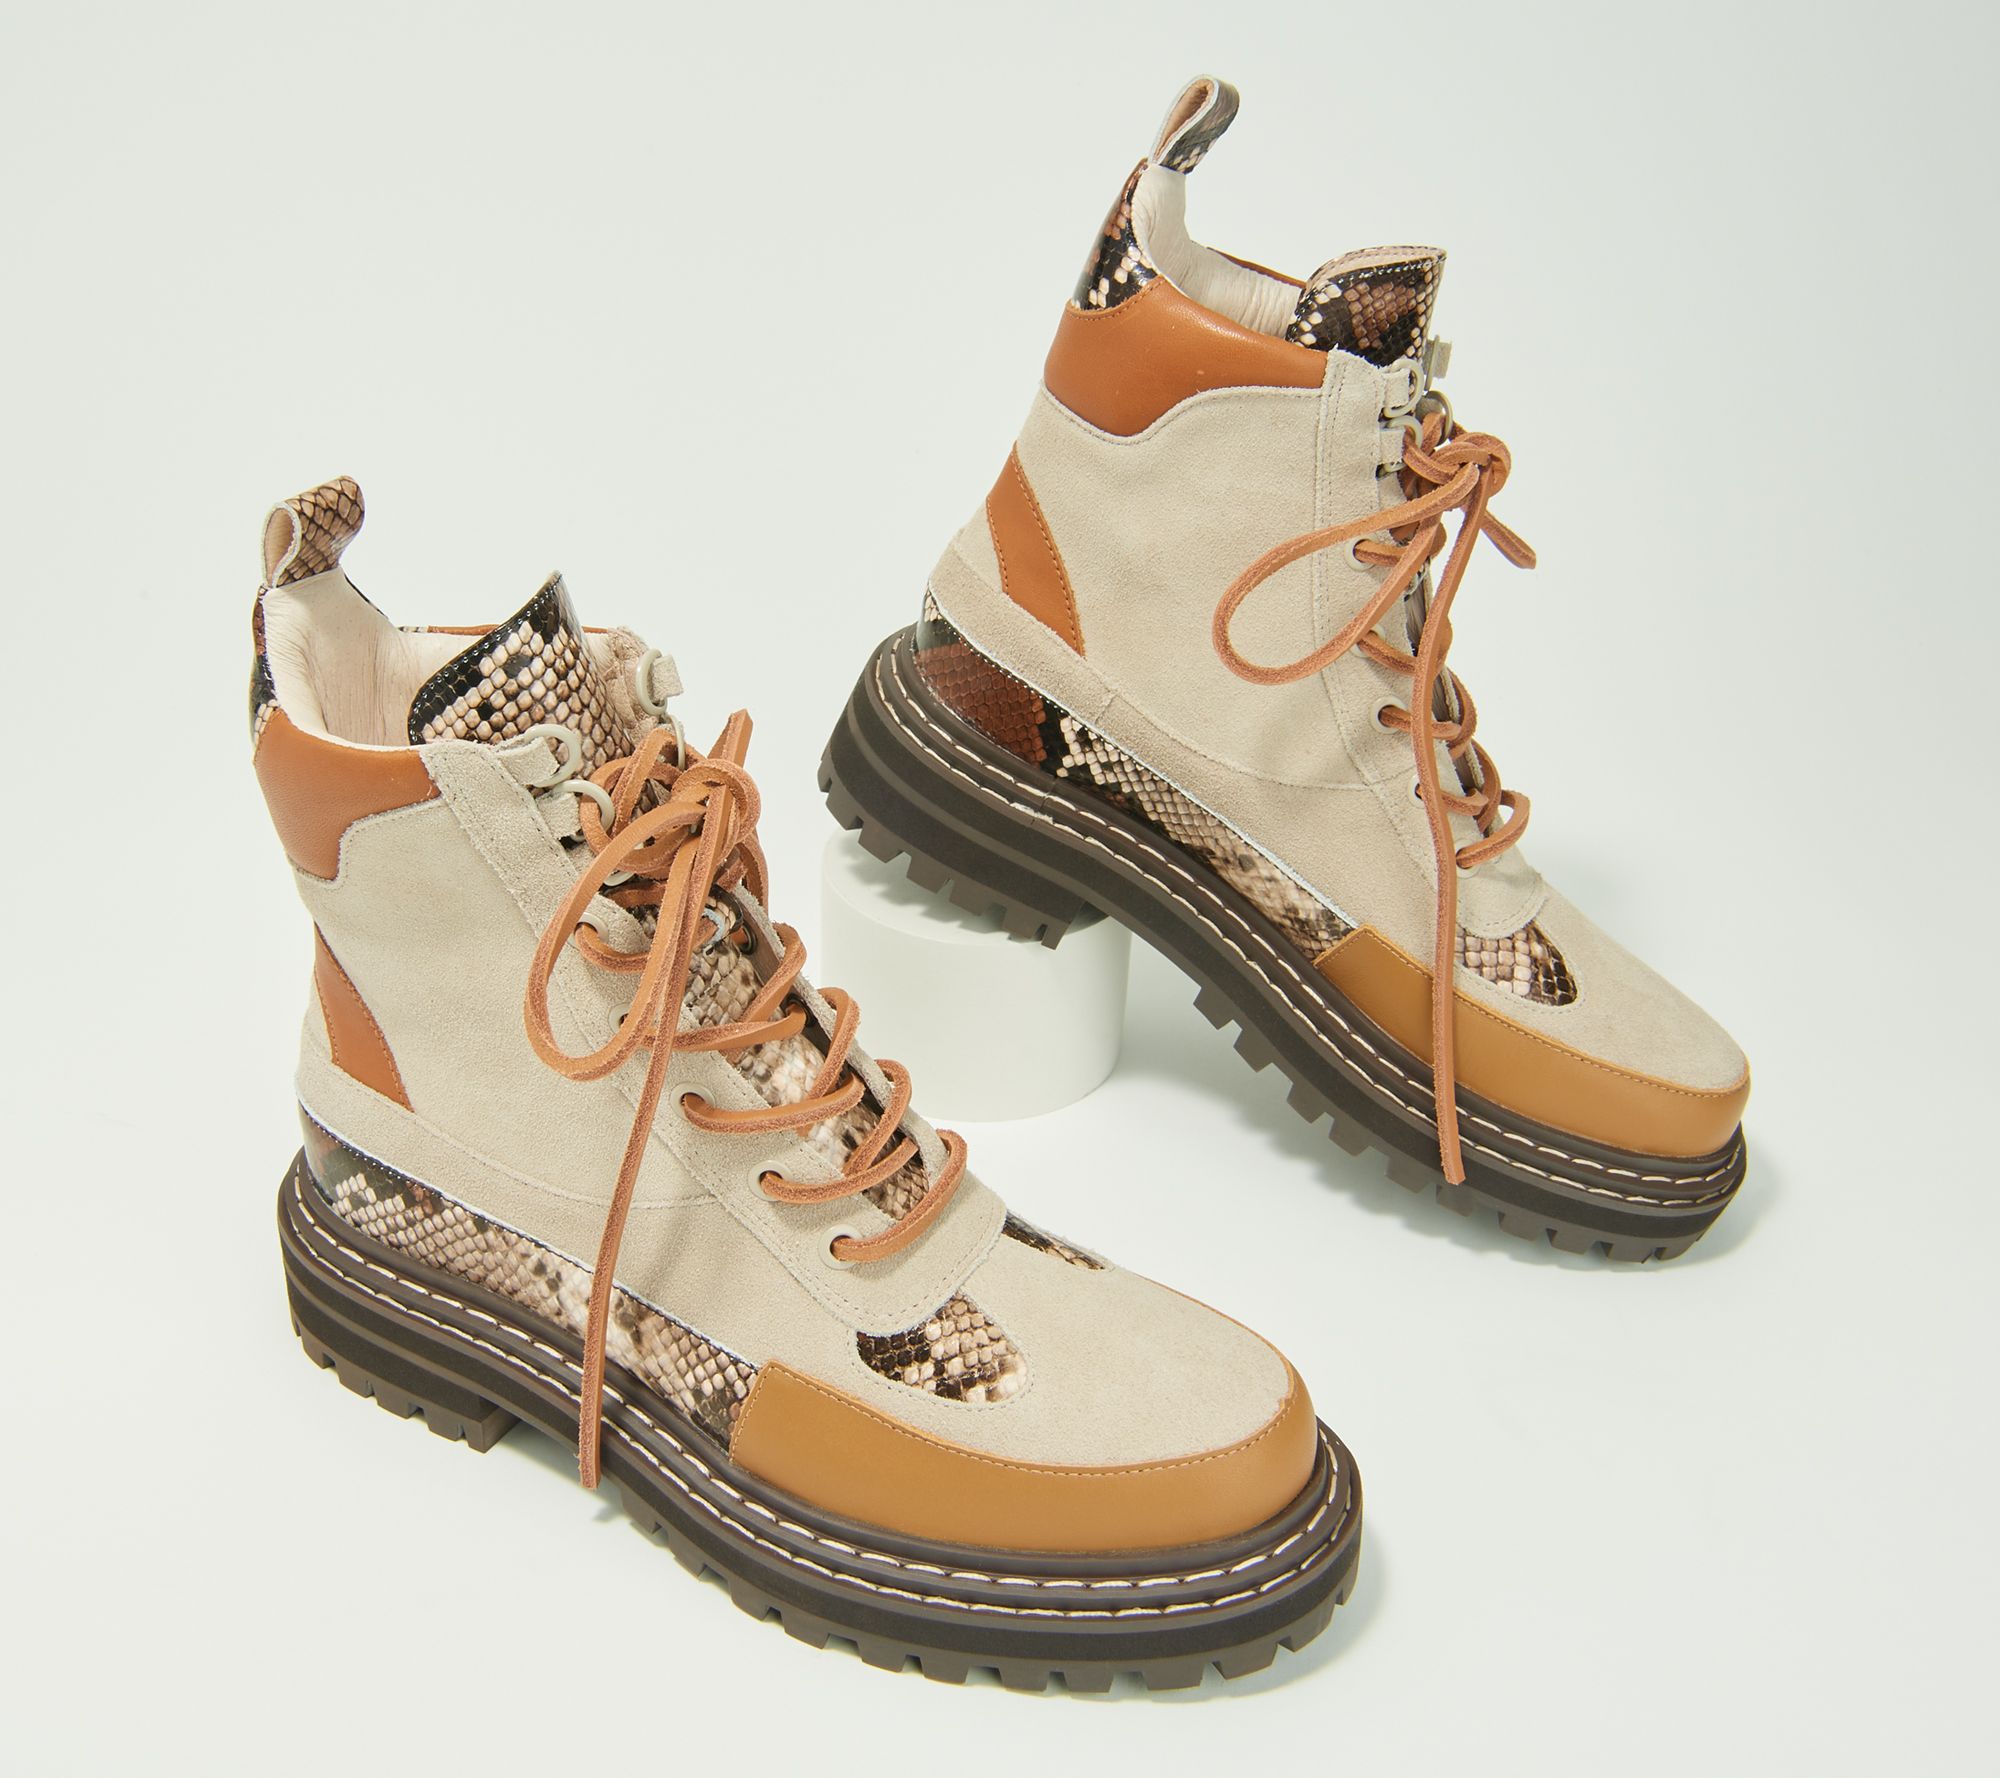 louis vuitton timberland boots mens - Google Search  Timberland roll top  boots, Boots, Timberland boots mens